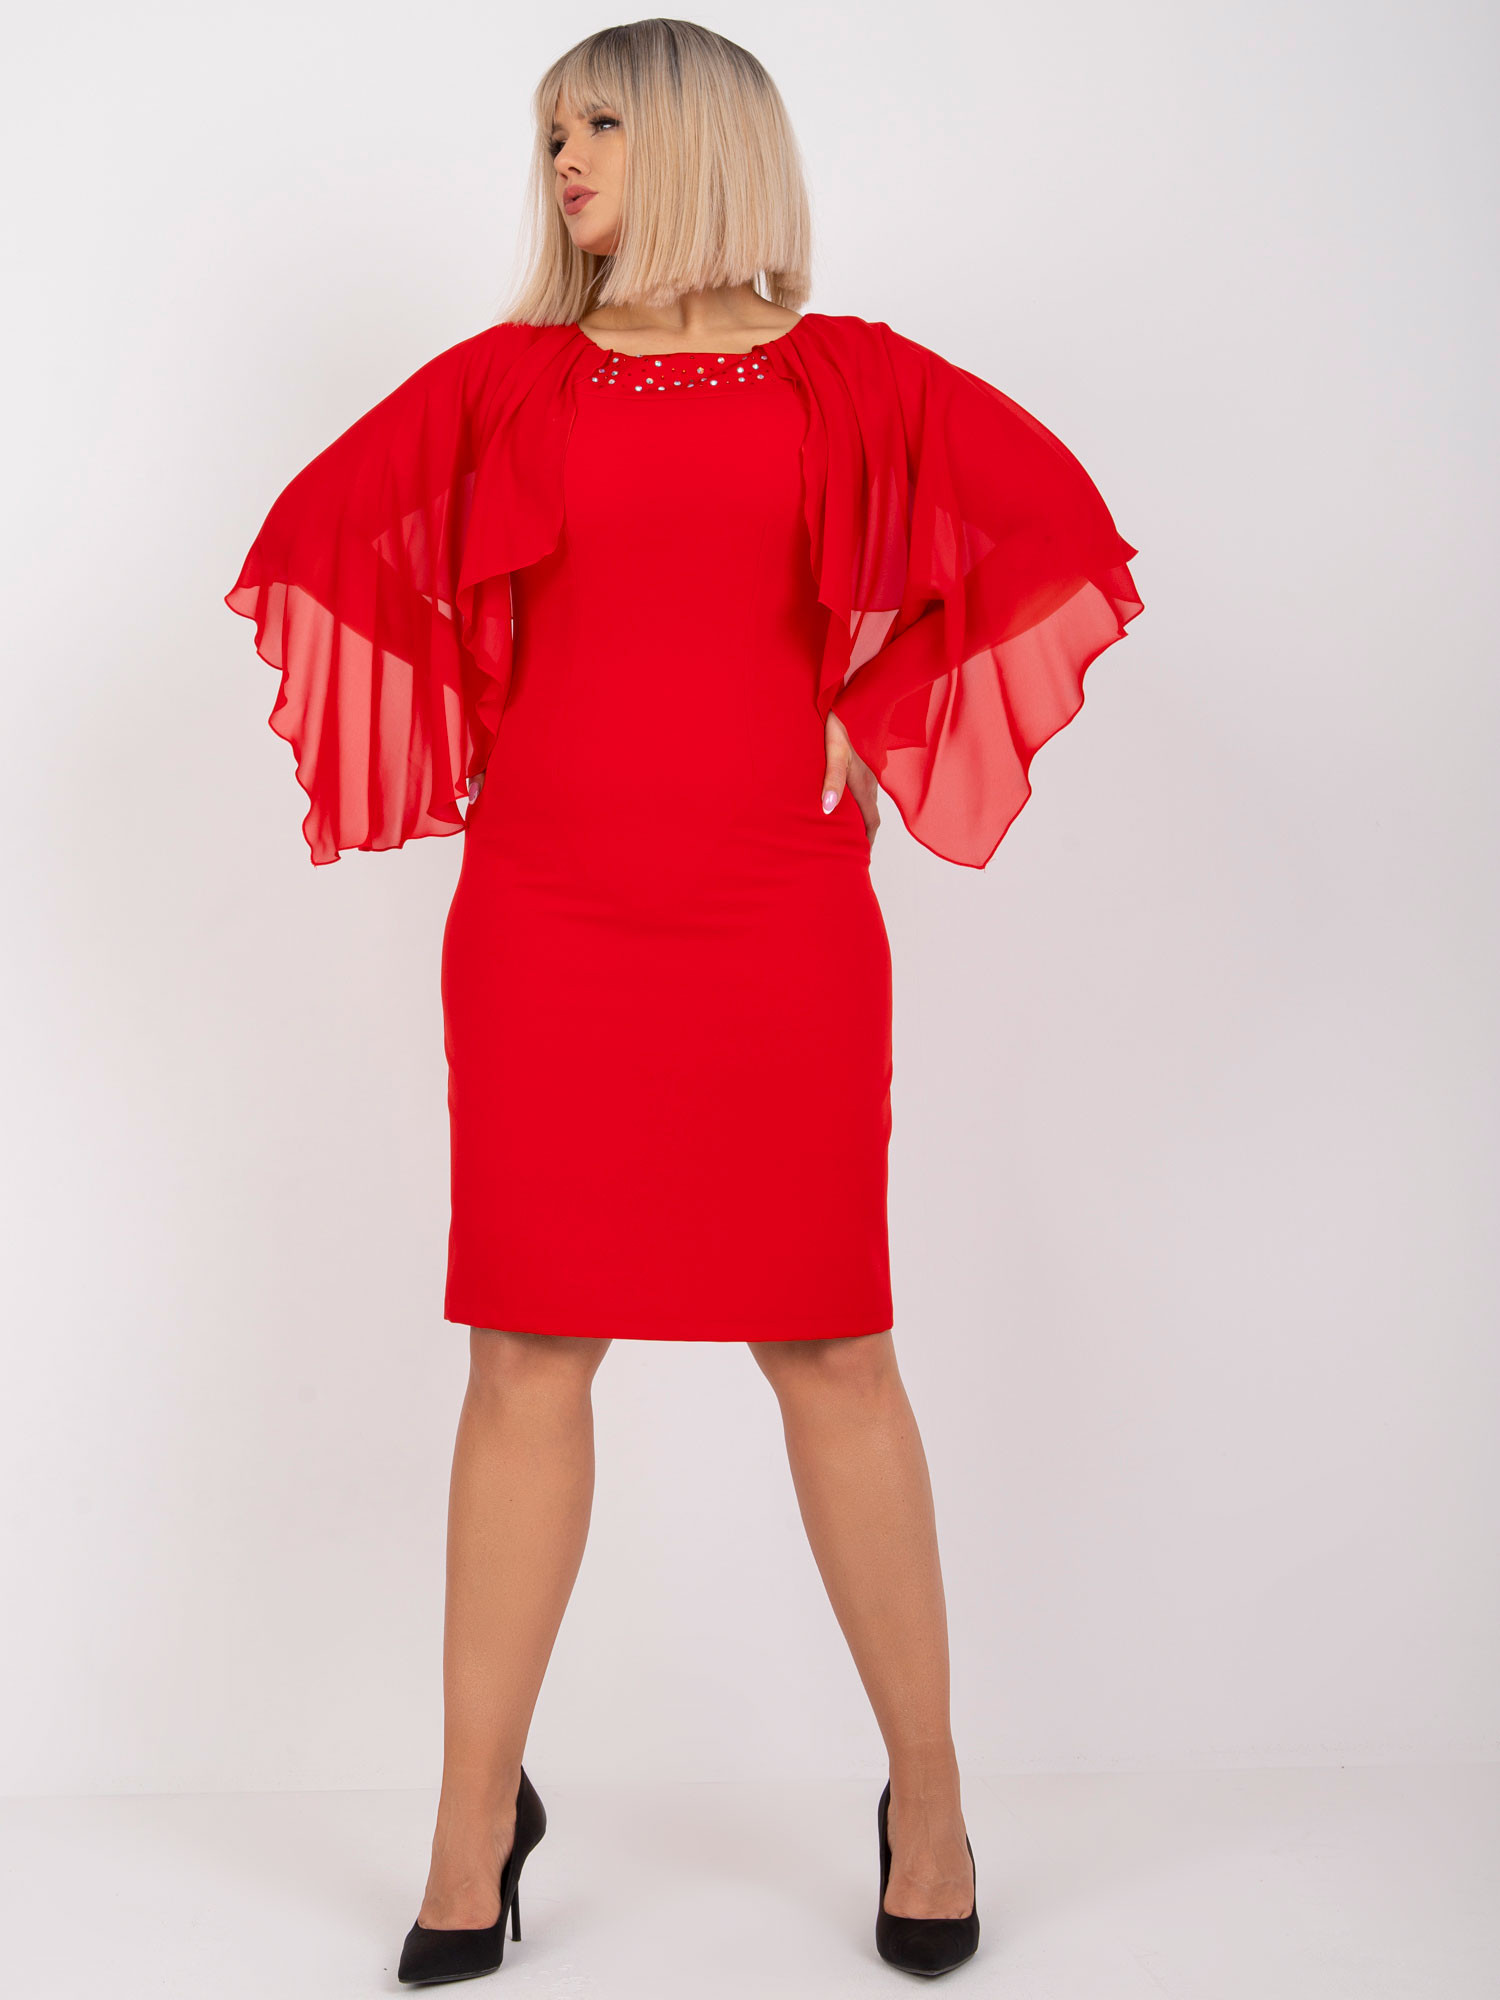 Dámské šaty NU SK model 18052483 červená červená 48 - FPrice